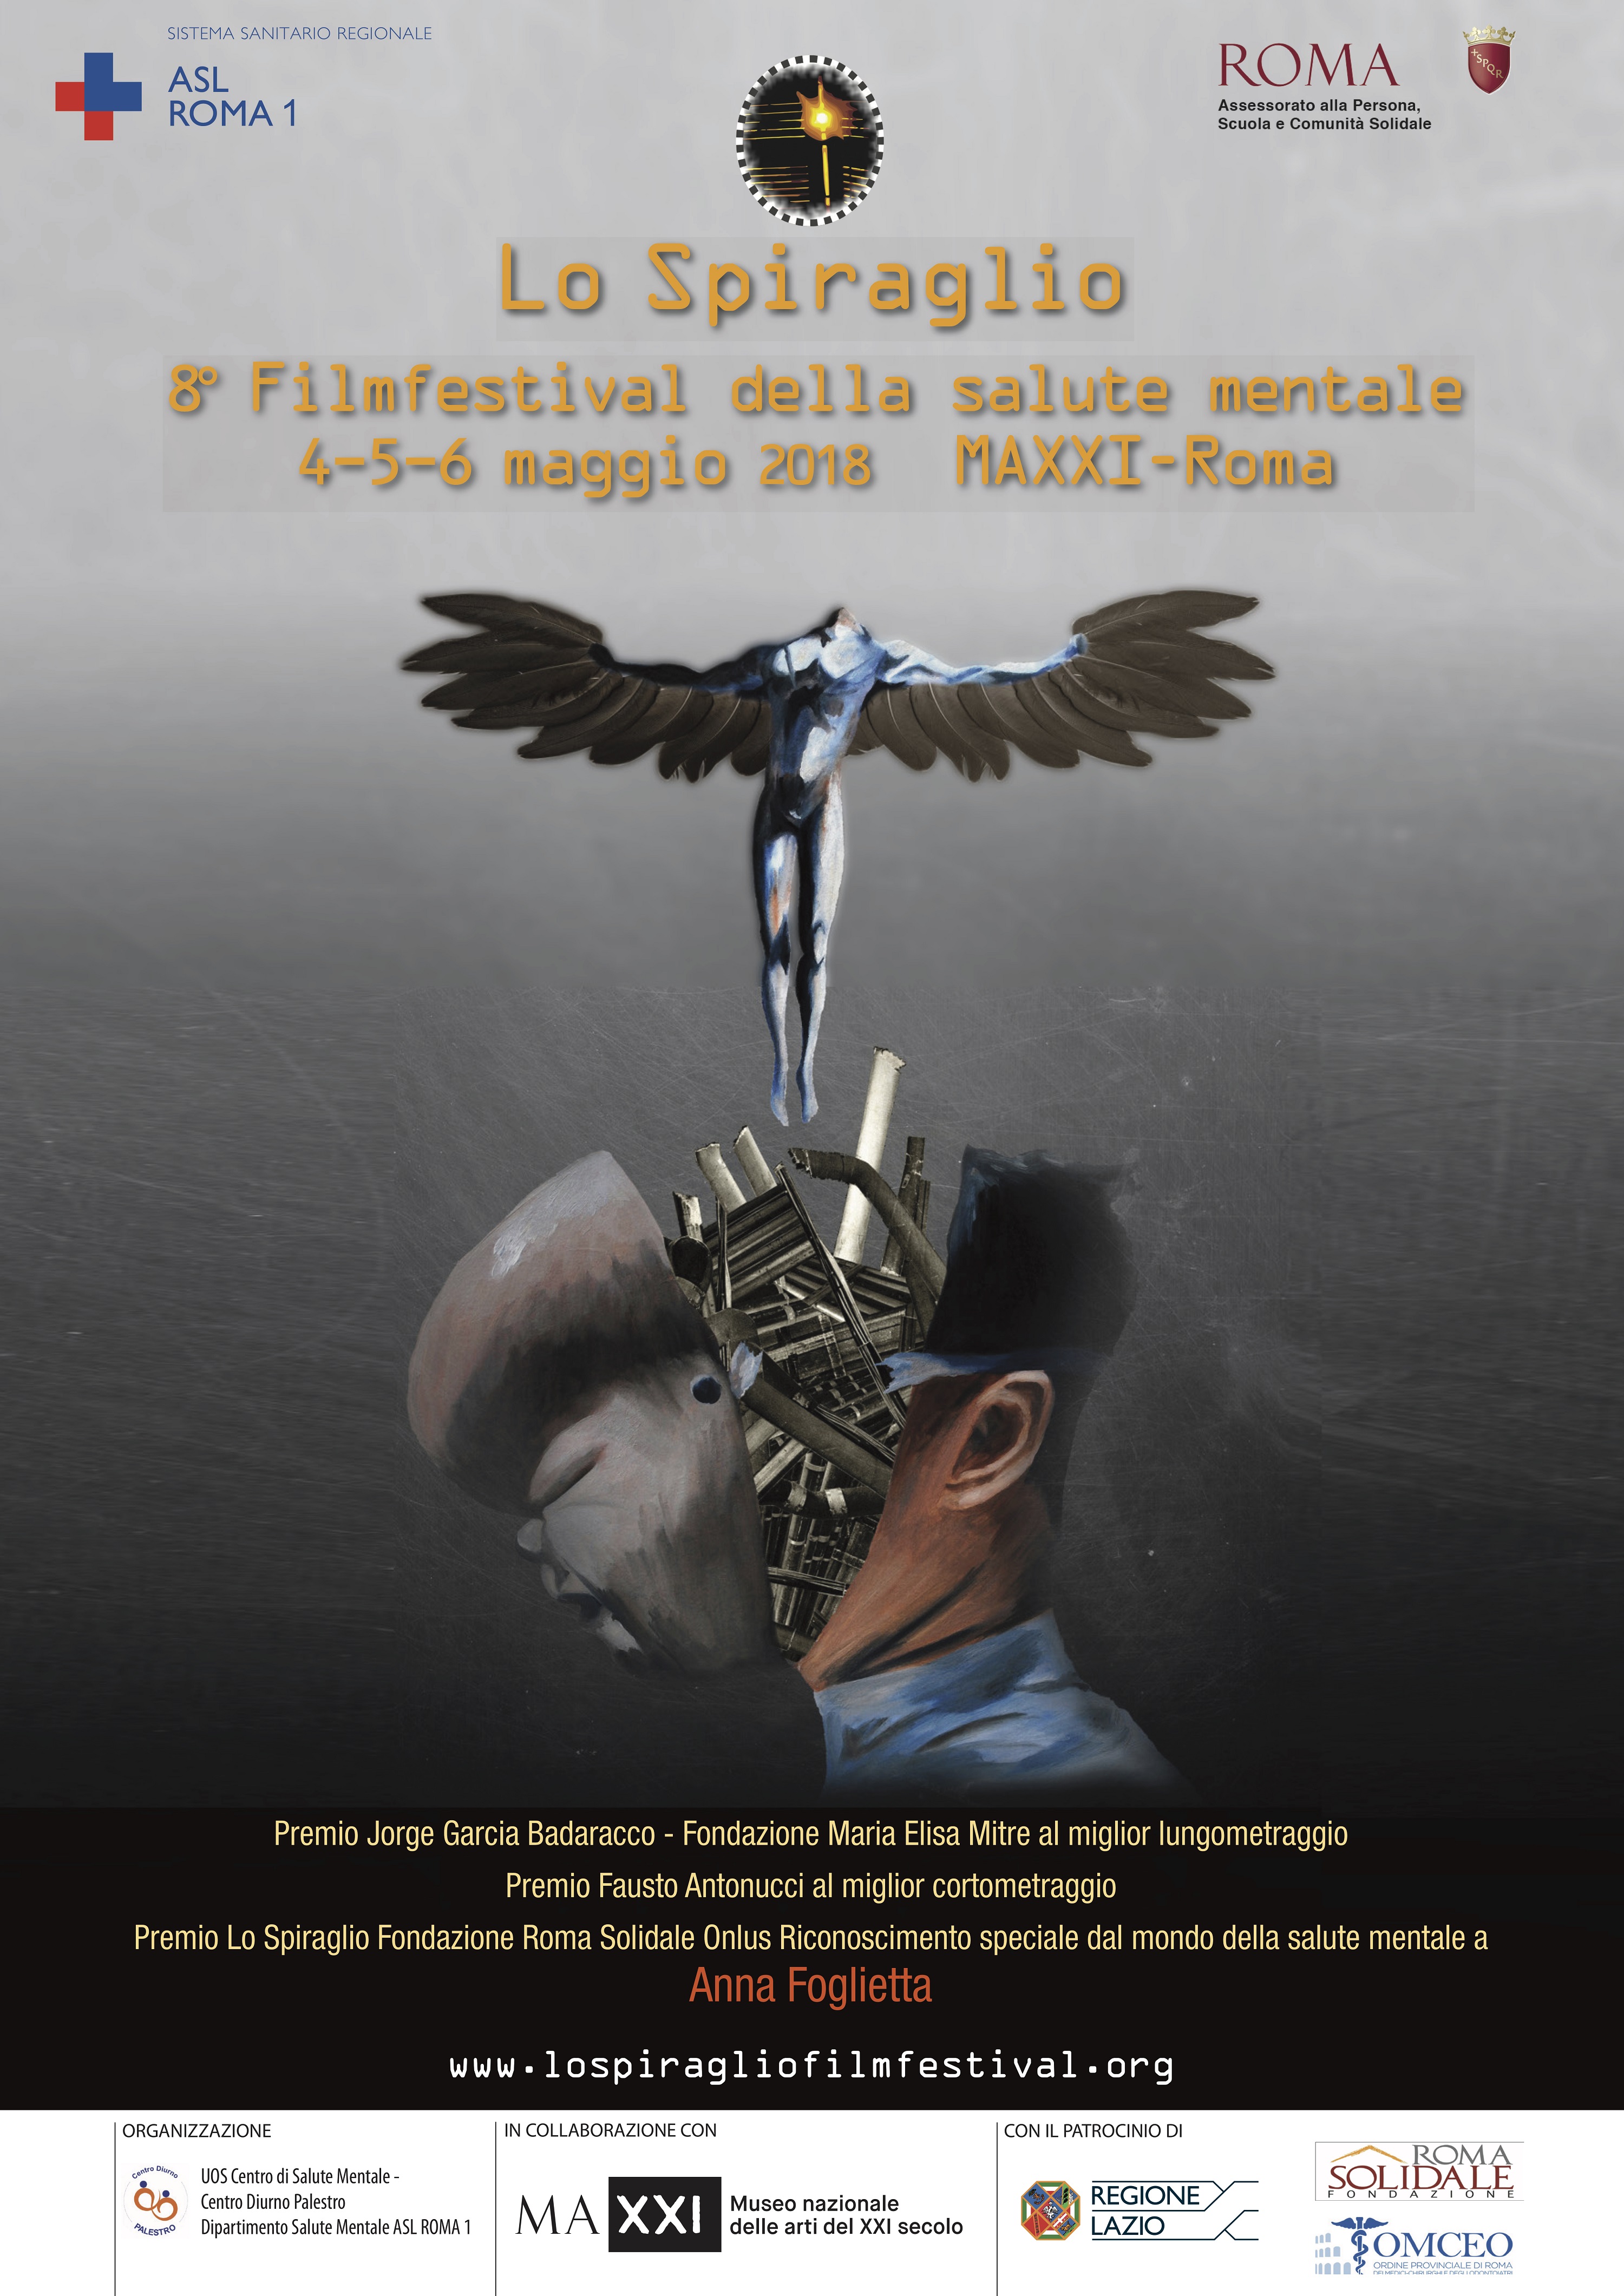 Roma: al via Lo Spiraglio, il FilmFestival della salute mentale